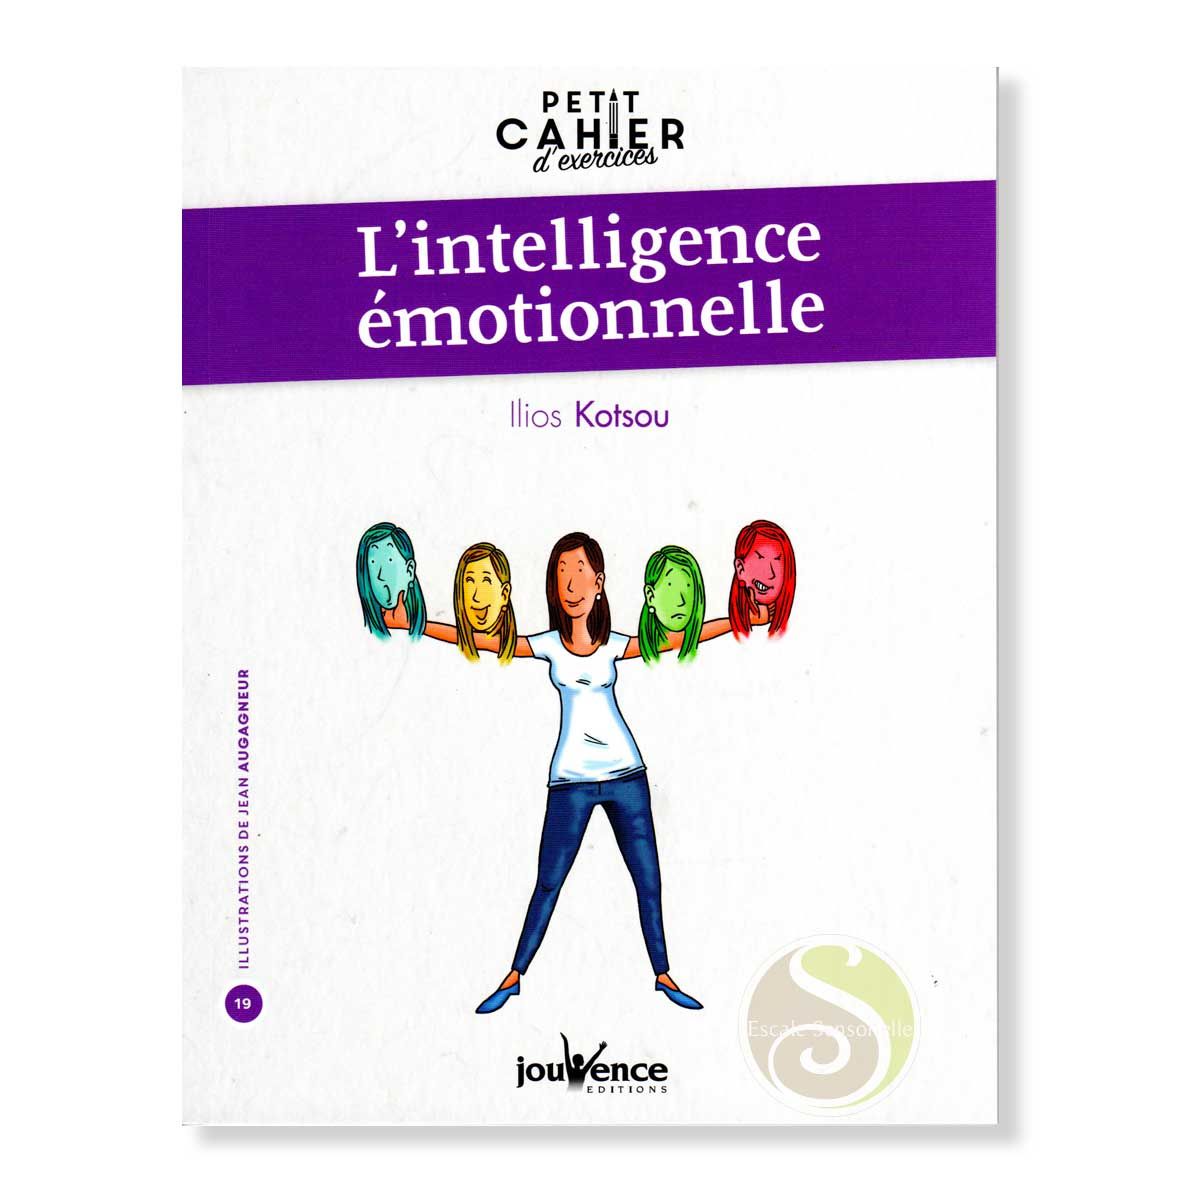 Petit cahier d'exercices d'intelligence émotionnelle llios Kotsou